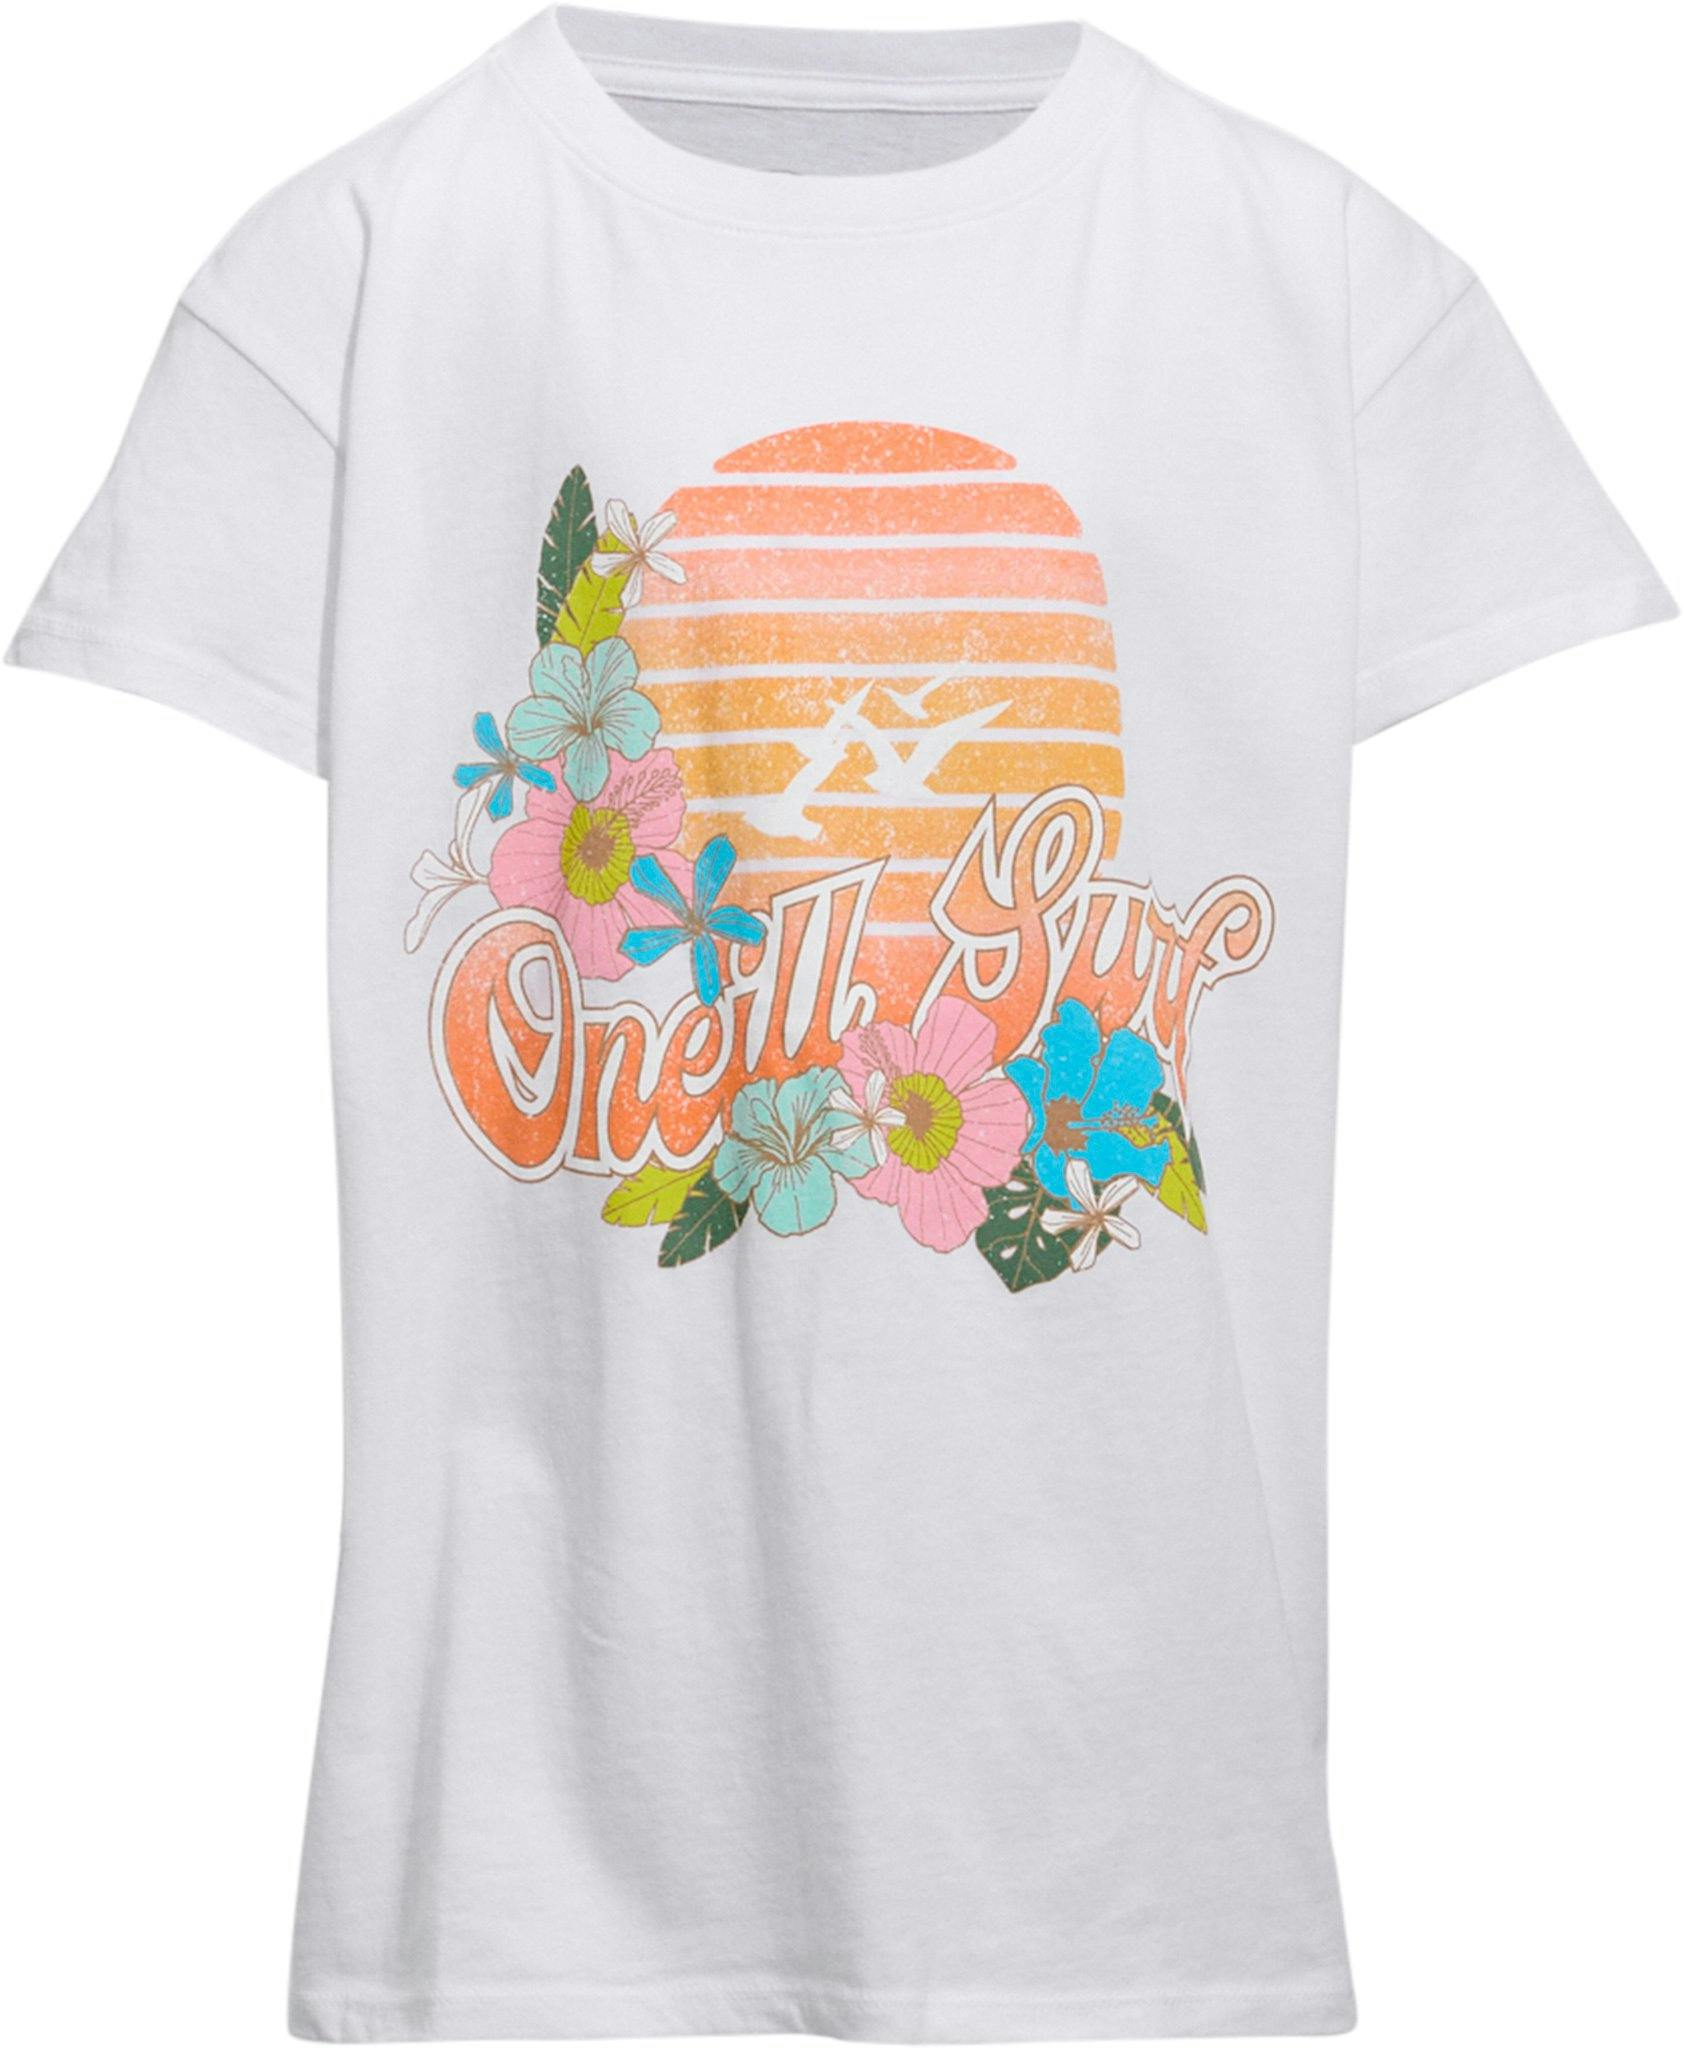 Image de produit pour T-shirt Sunrise - Fille